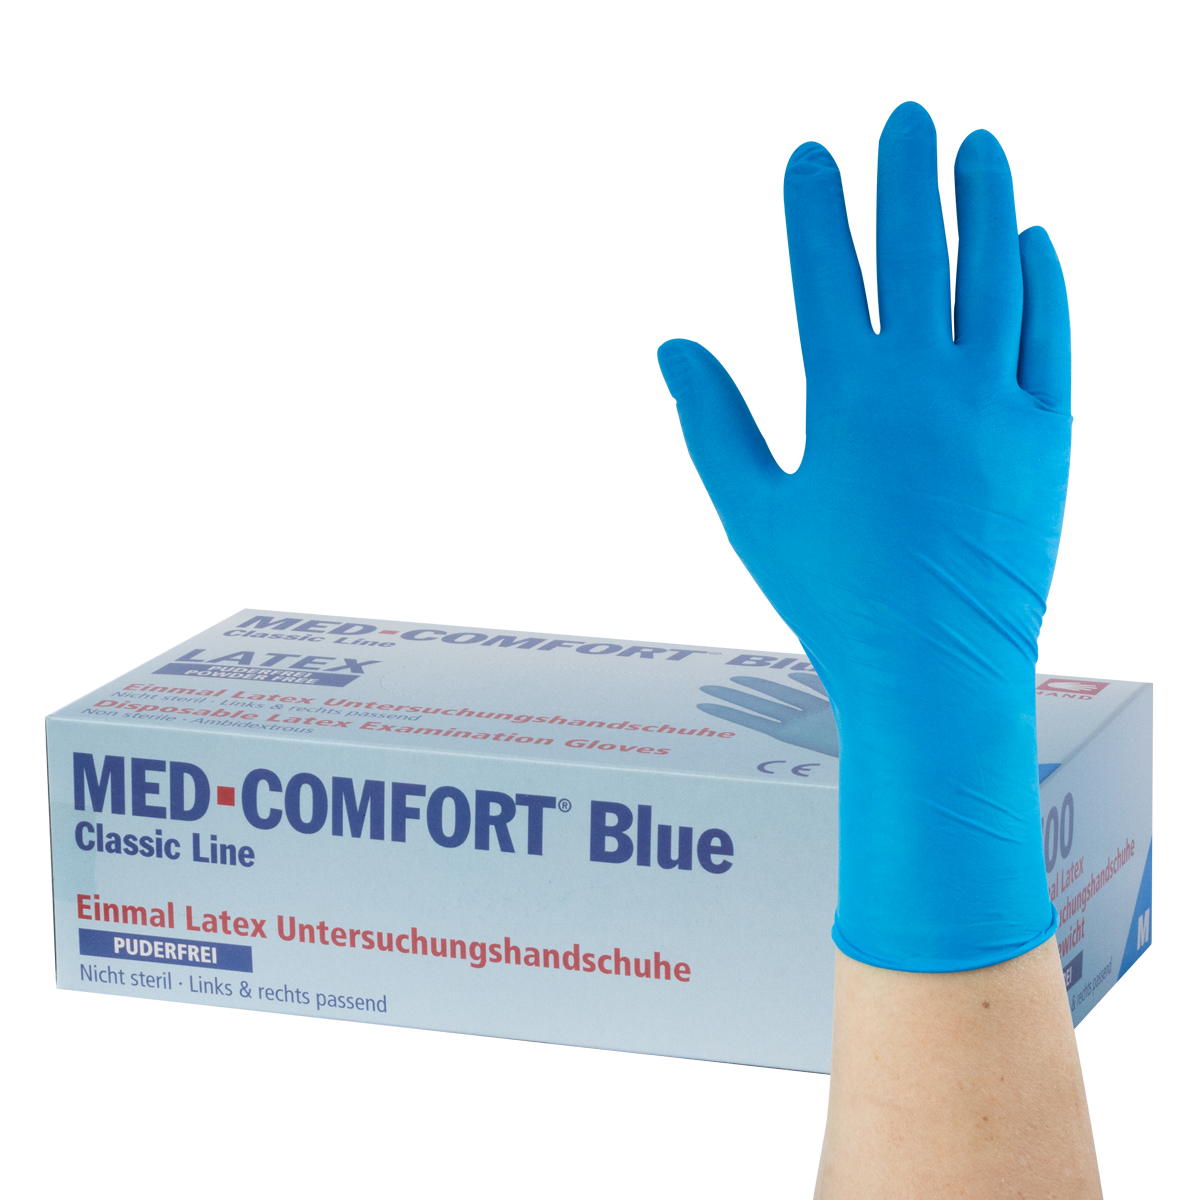 MED-COMFORT Blue - Latexhandschuhe, puderfrei, 100 Stück (01113)